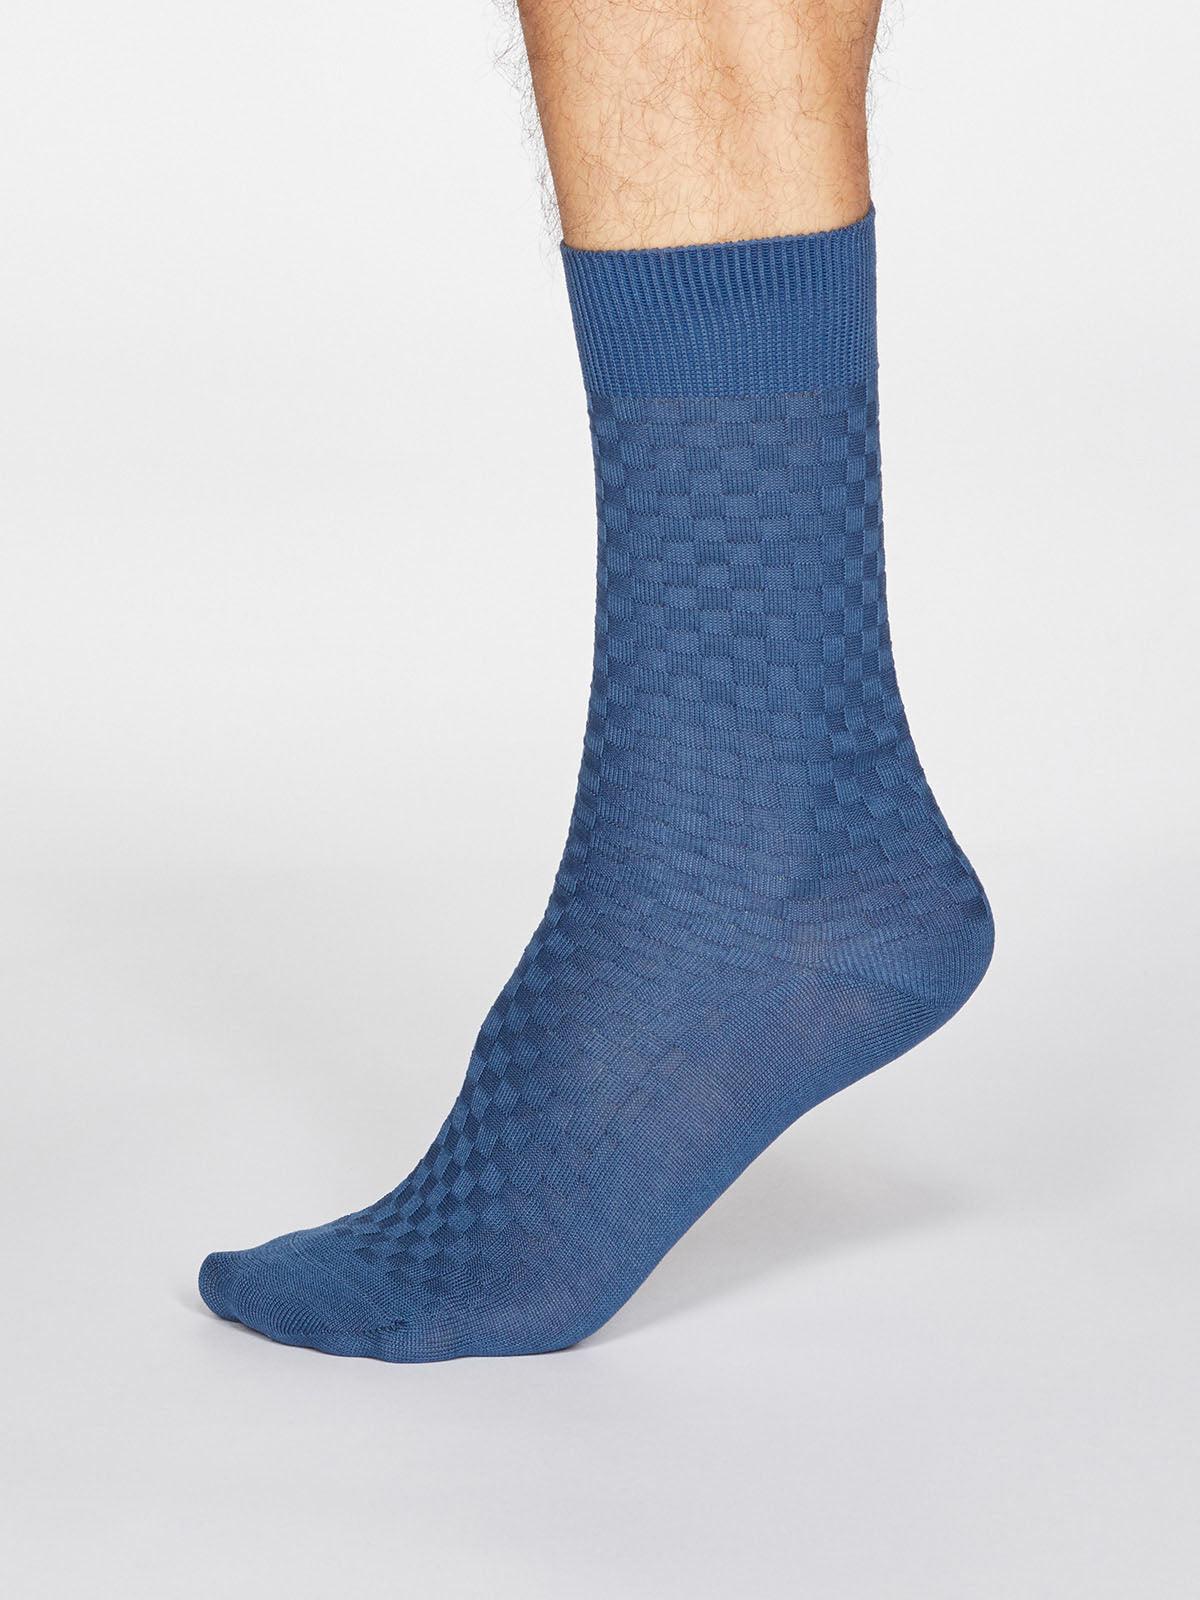 Cameron Dress Socks - Denim Blue - Thought Clothing UK